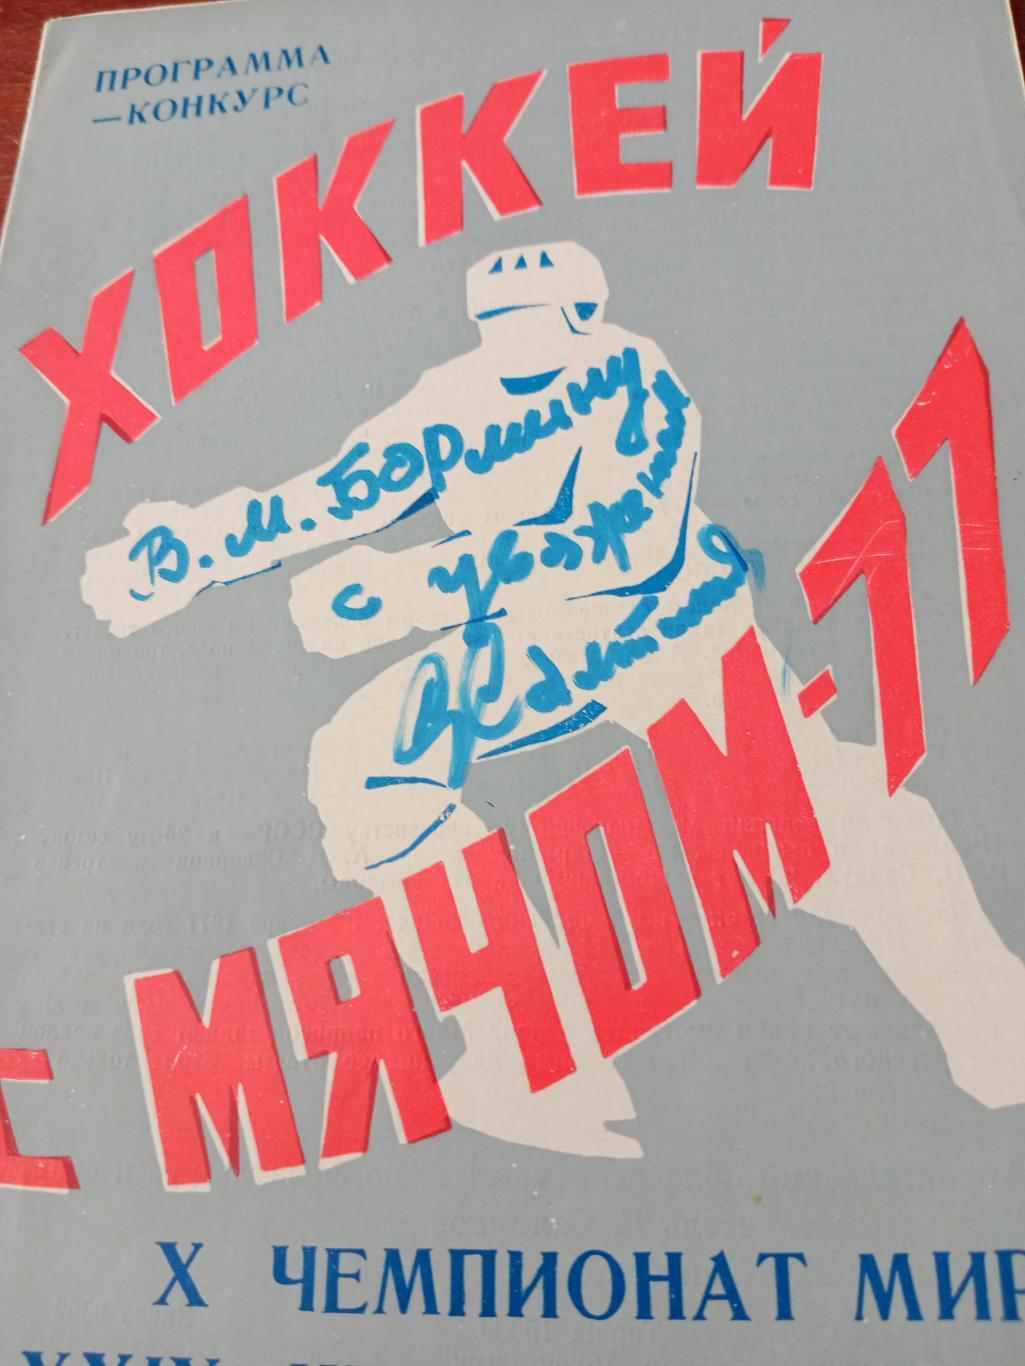 Хоккей с мячом. Северодвинск-1977. Программа-конкурс